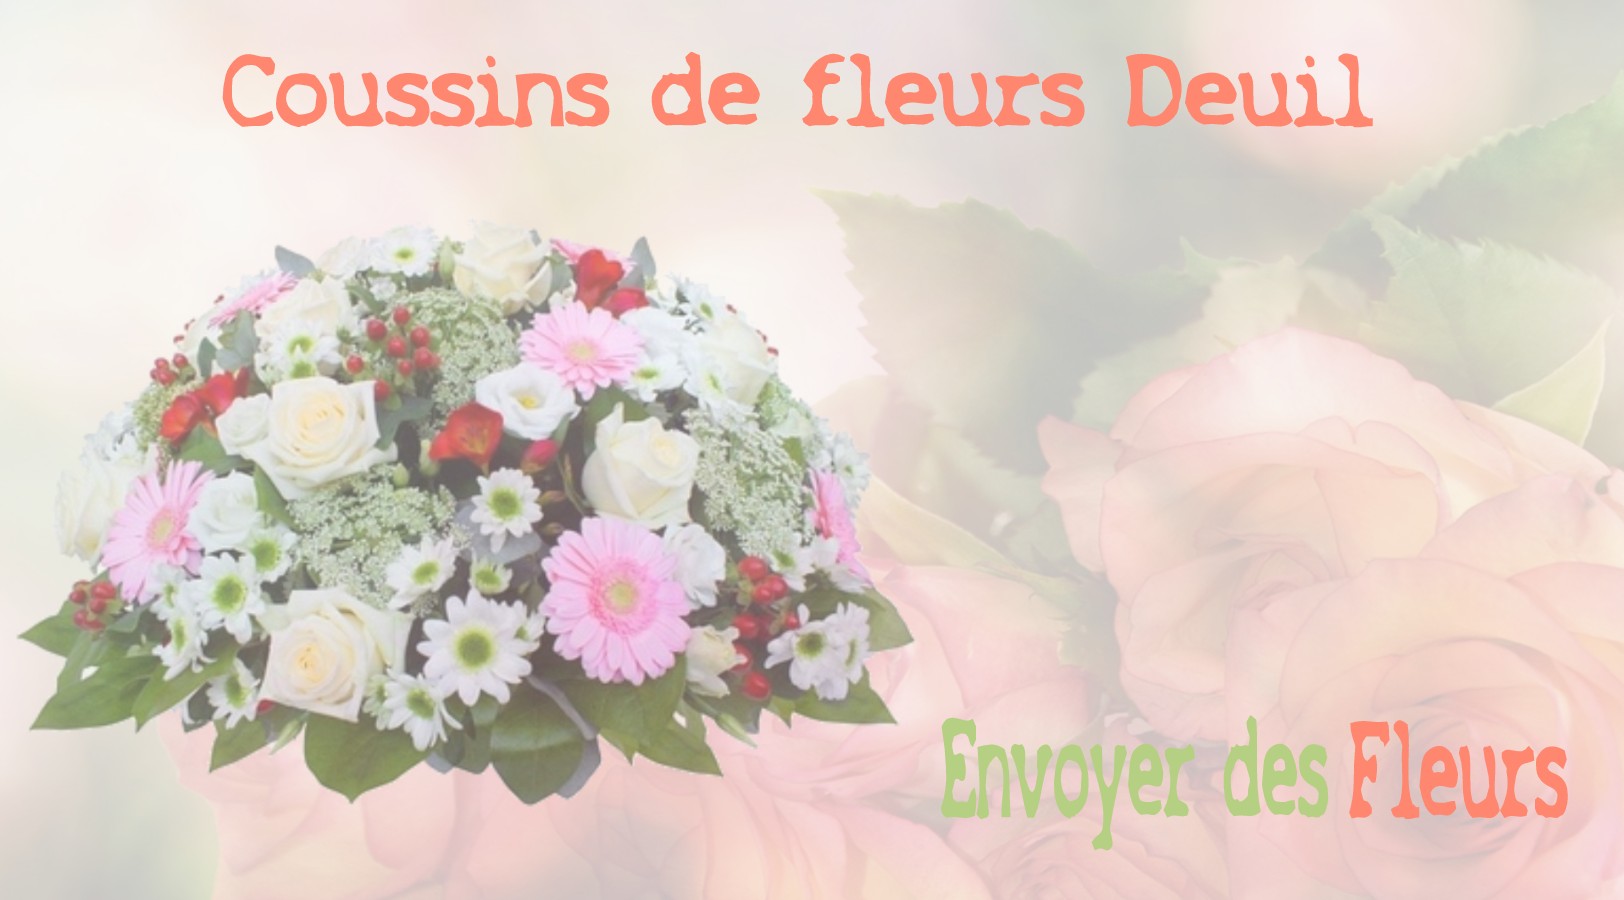 Les coussins de fleurs deuil - LIVRAISON FLEURS DEUIL A MONTAINVILLE 78